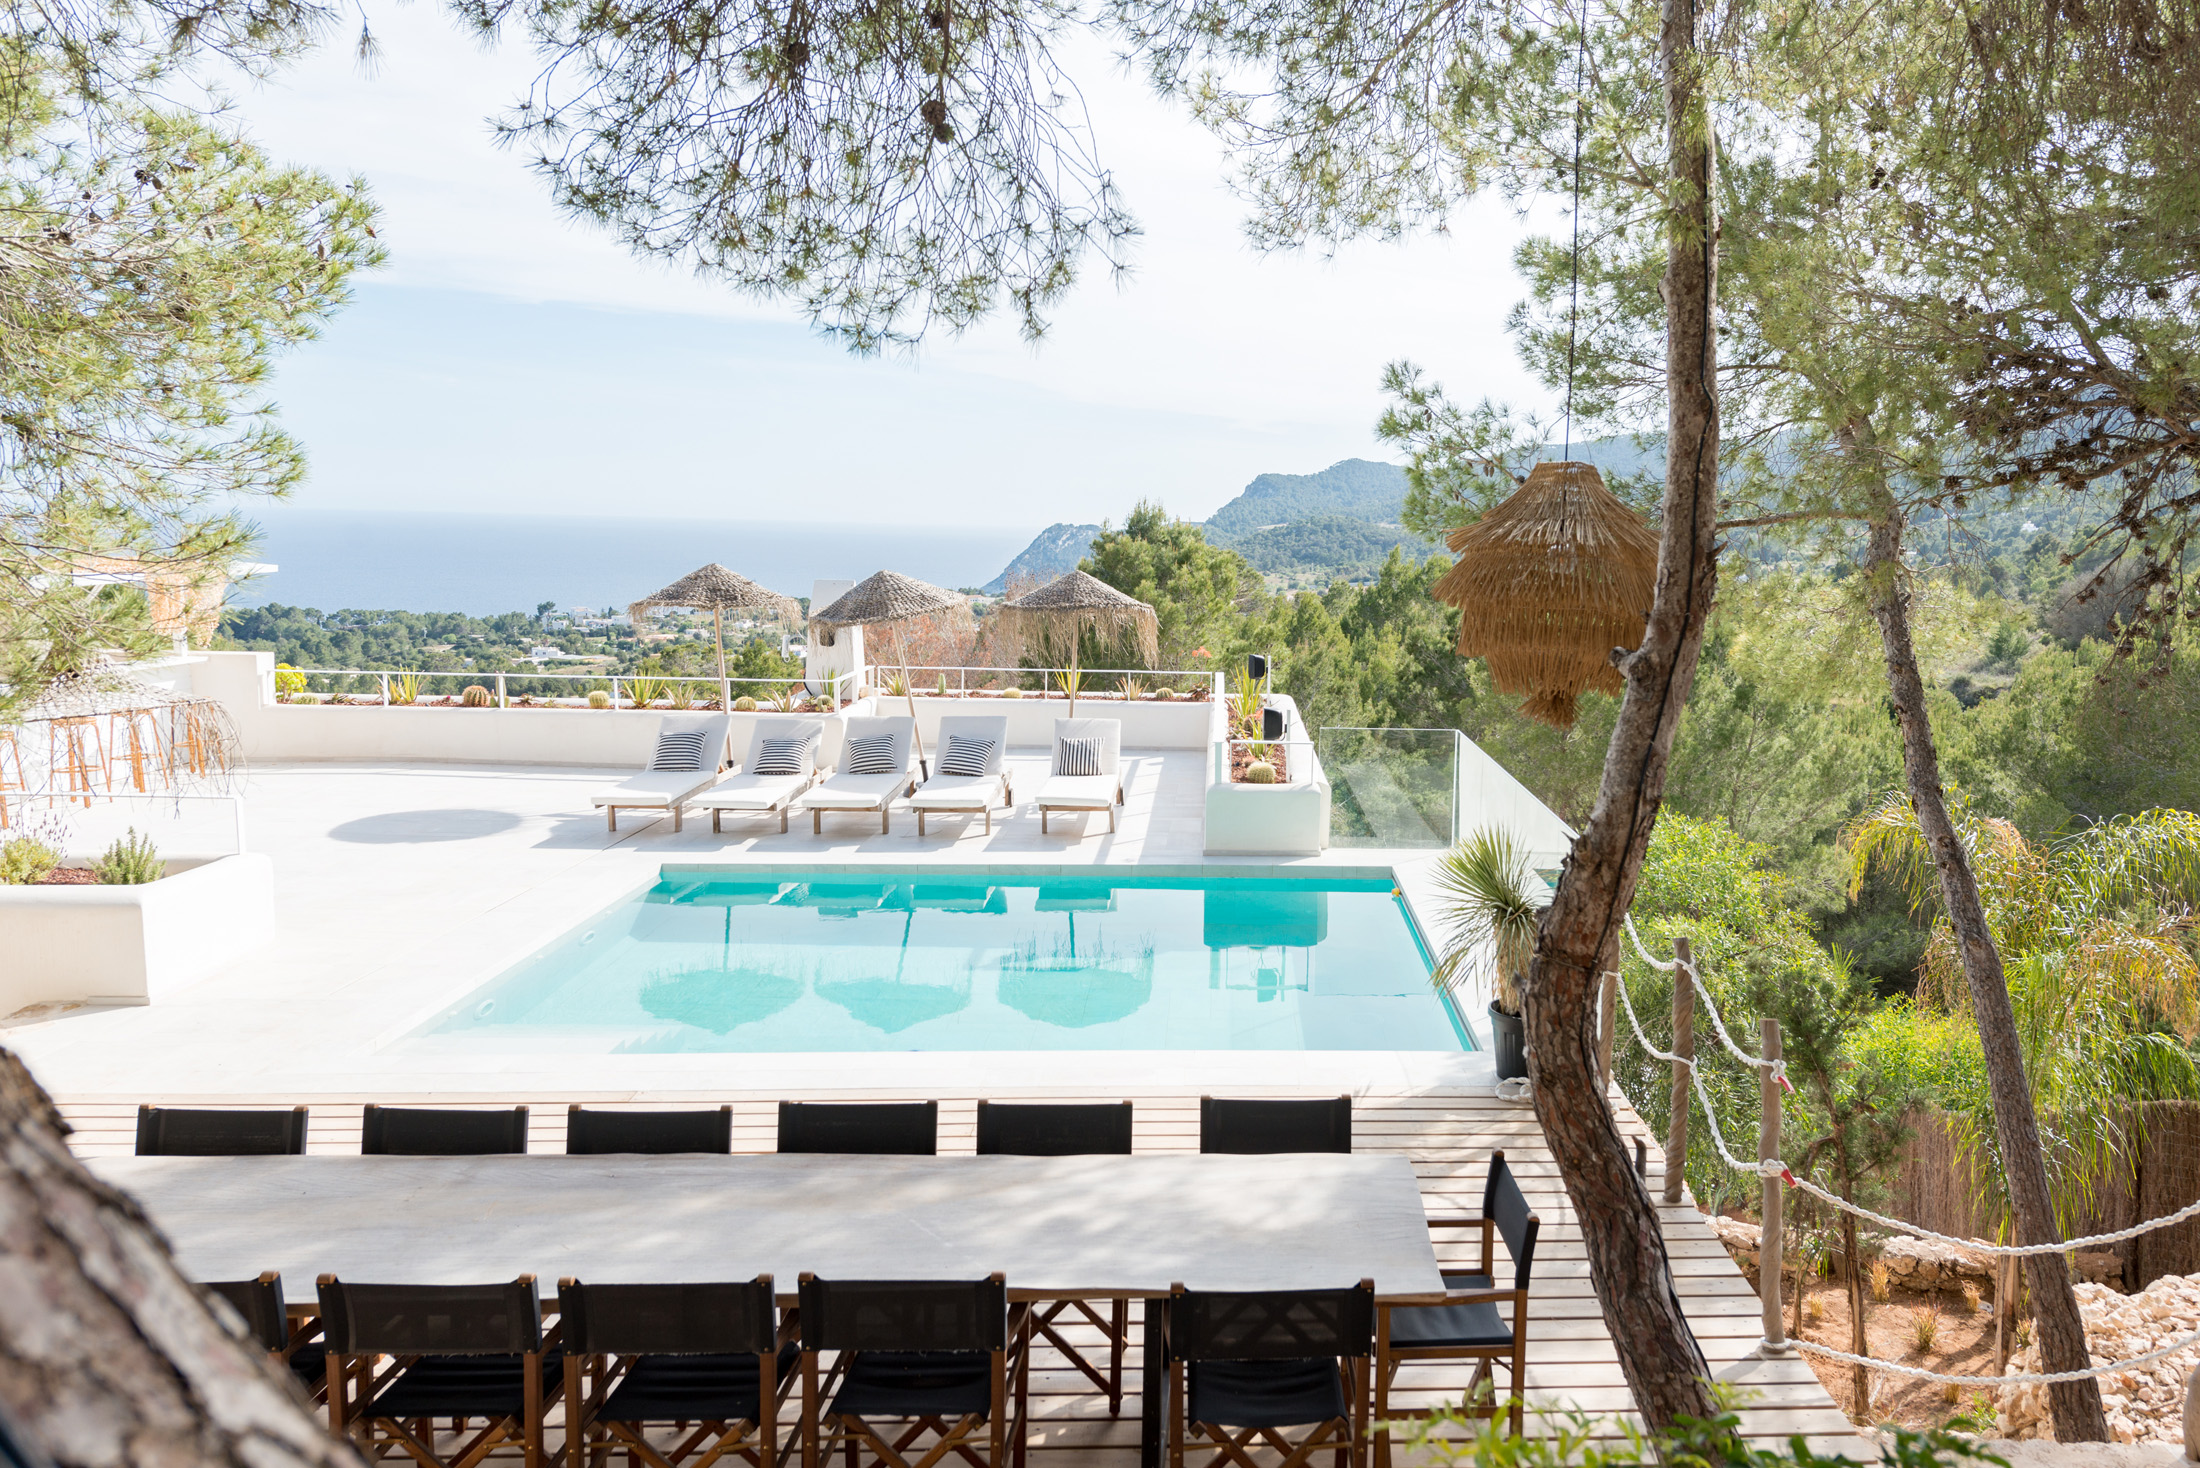 Swimming pool and view at La Verna Villa Domus Nova Ibiza